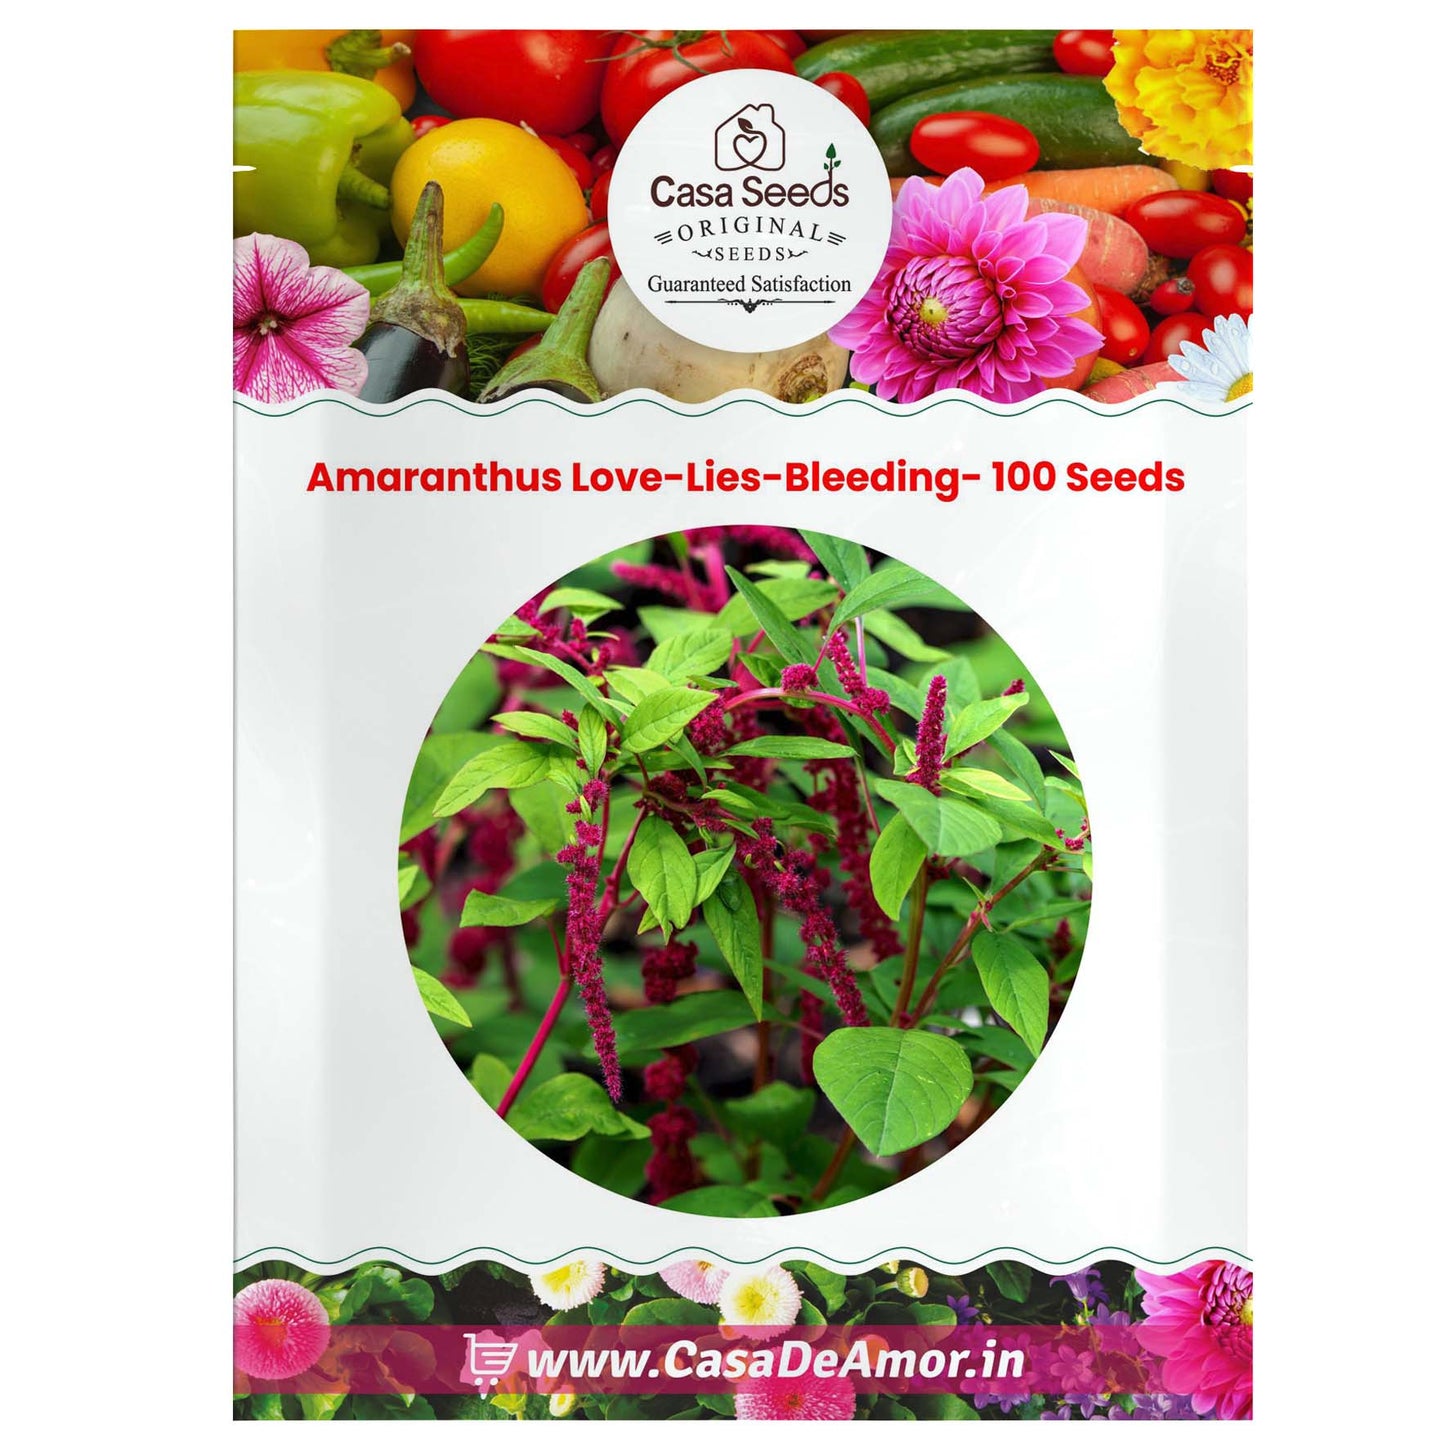 Amaranthus Love-Lies-Bleeding- 100 Seeds